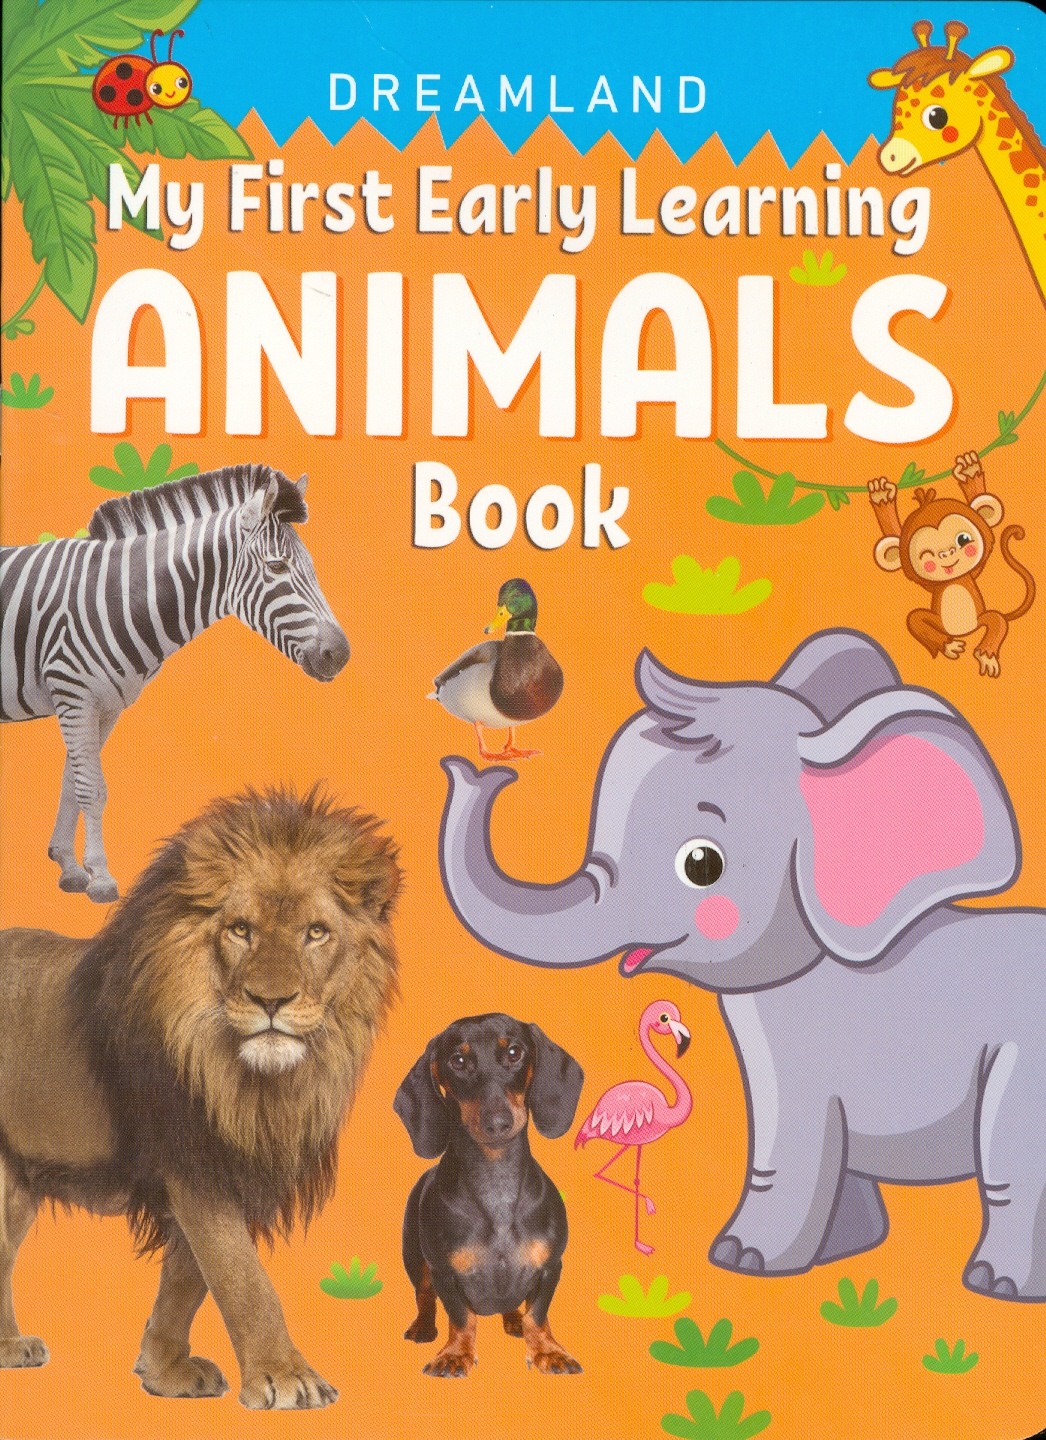 My First Early Learning - Animals Book (Bài học đầu tiên của tôi - Sách về các loài động vật)